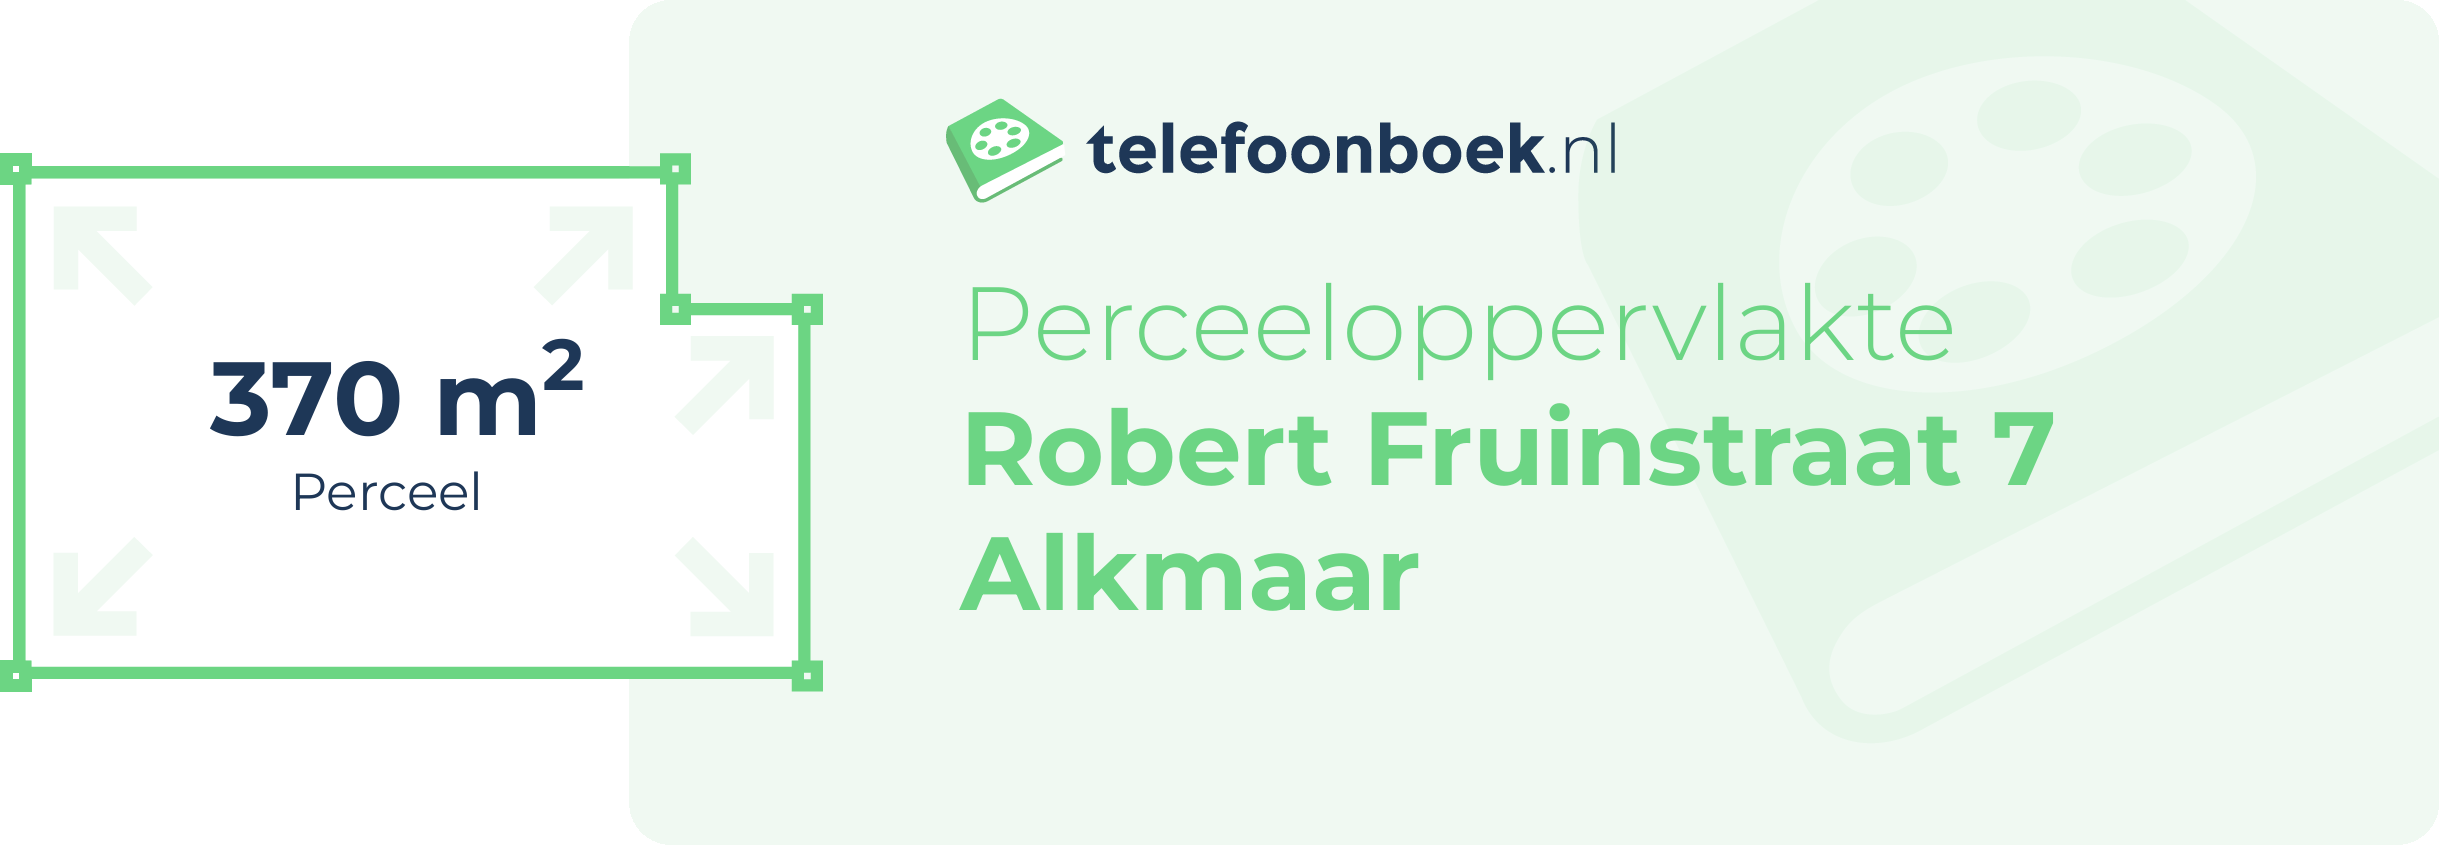 Perceeloppervlakte Robert Fruinstraat 7 Alkmaar